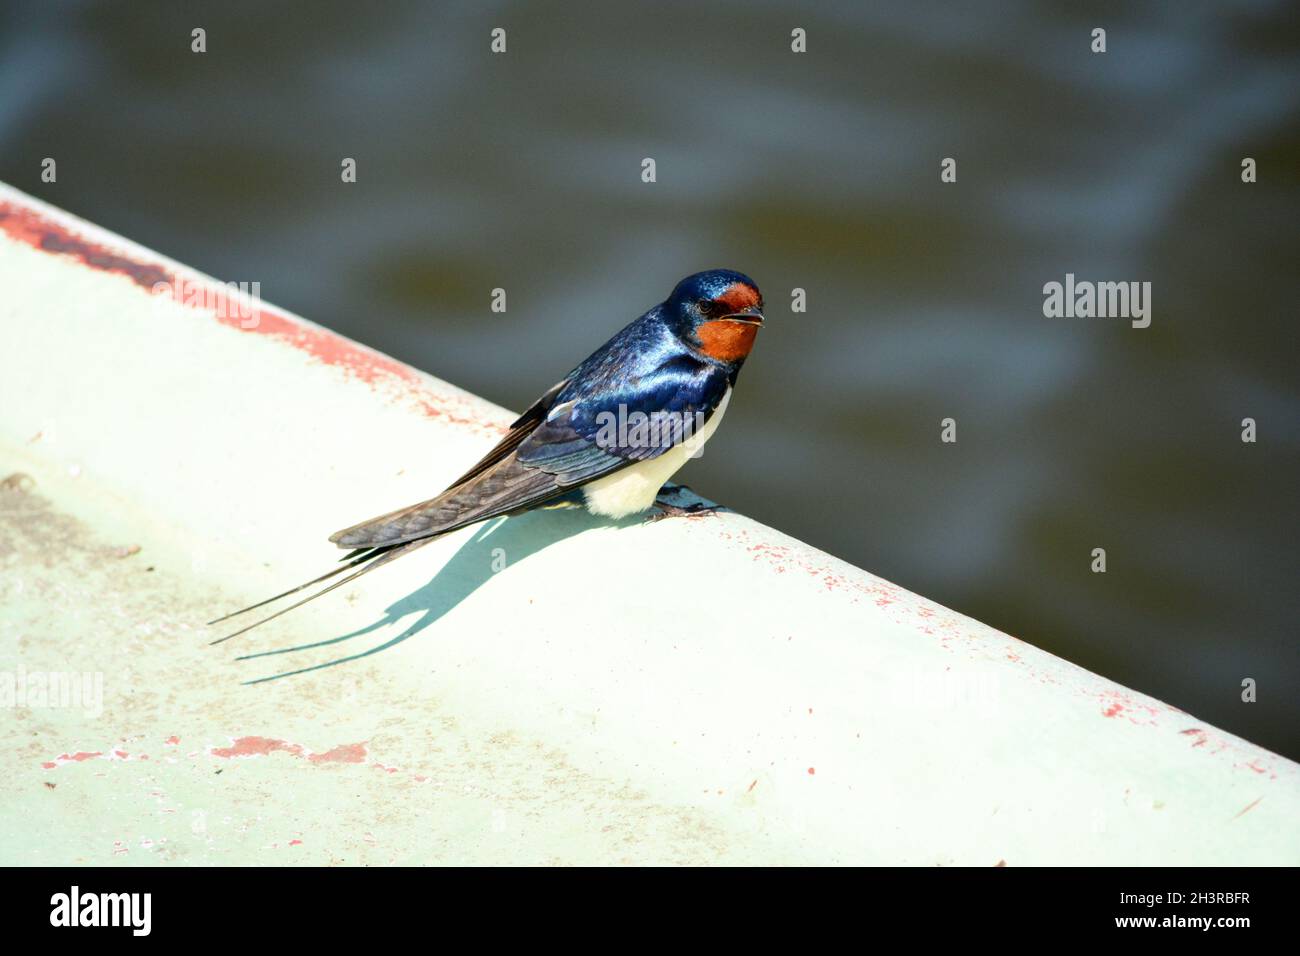 Barn Swallow (Hirundo rustica) sur le quai à Prerow - Fischland, Darß, Zingst, Mecklembourg-Poméranie-Occidentale, Allemagne Banque D'Images